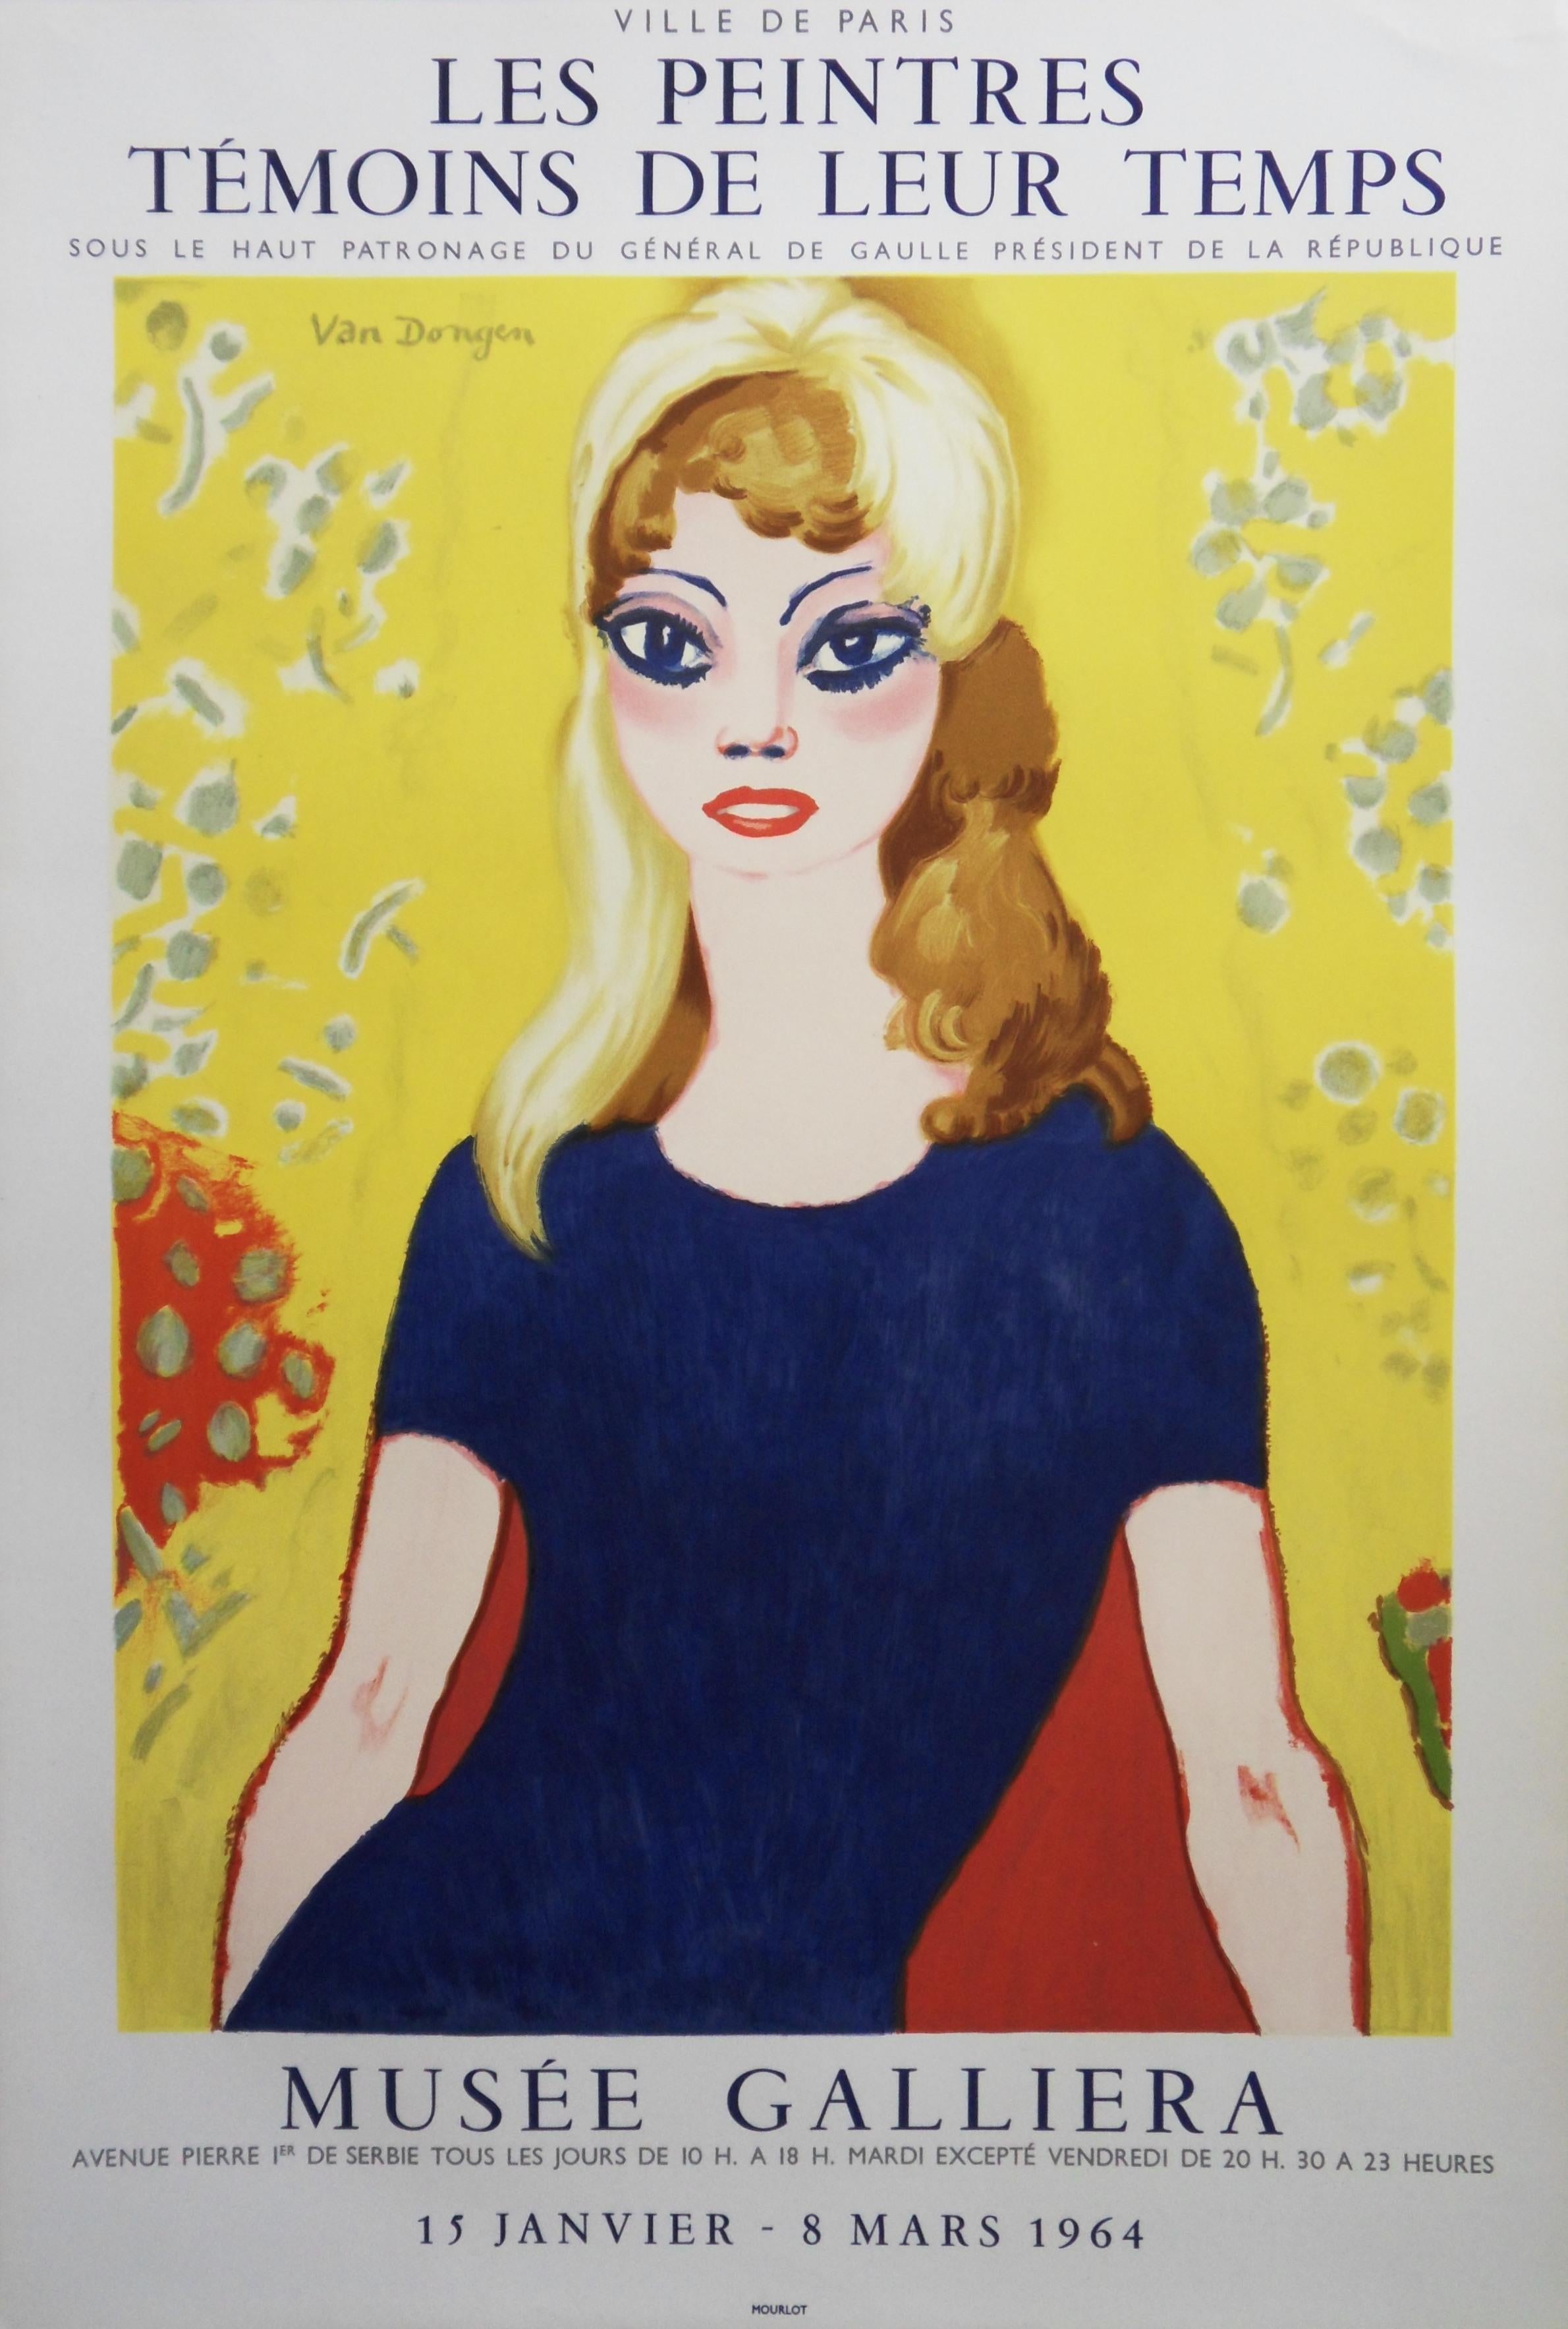 Kees van Dongen Portrait Print - Brigitte Bardot : Blond Woman with Tall Eyes - Original lithograph, Mourlot 1964